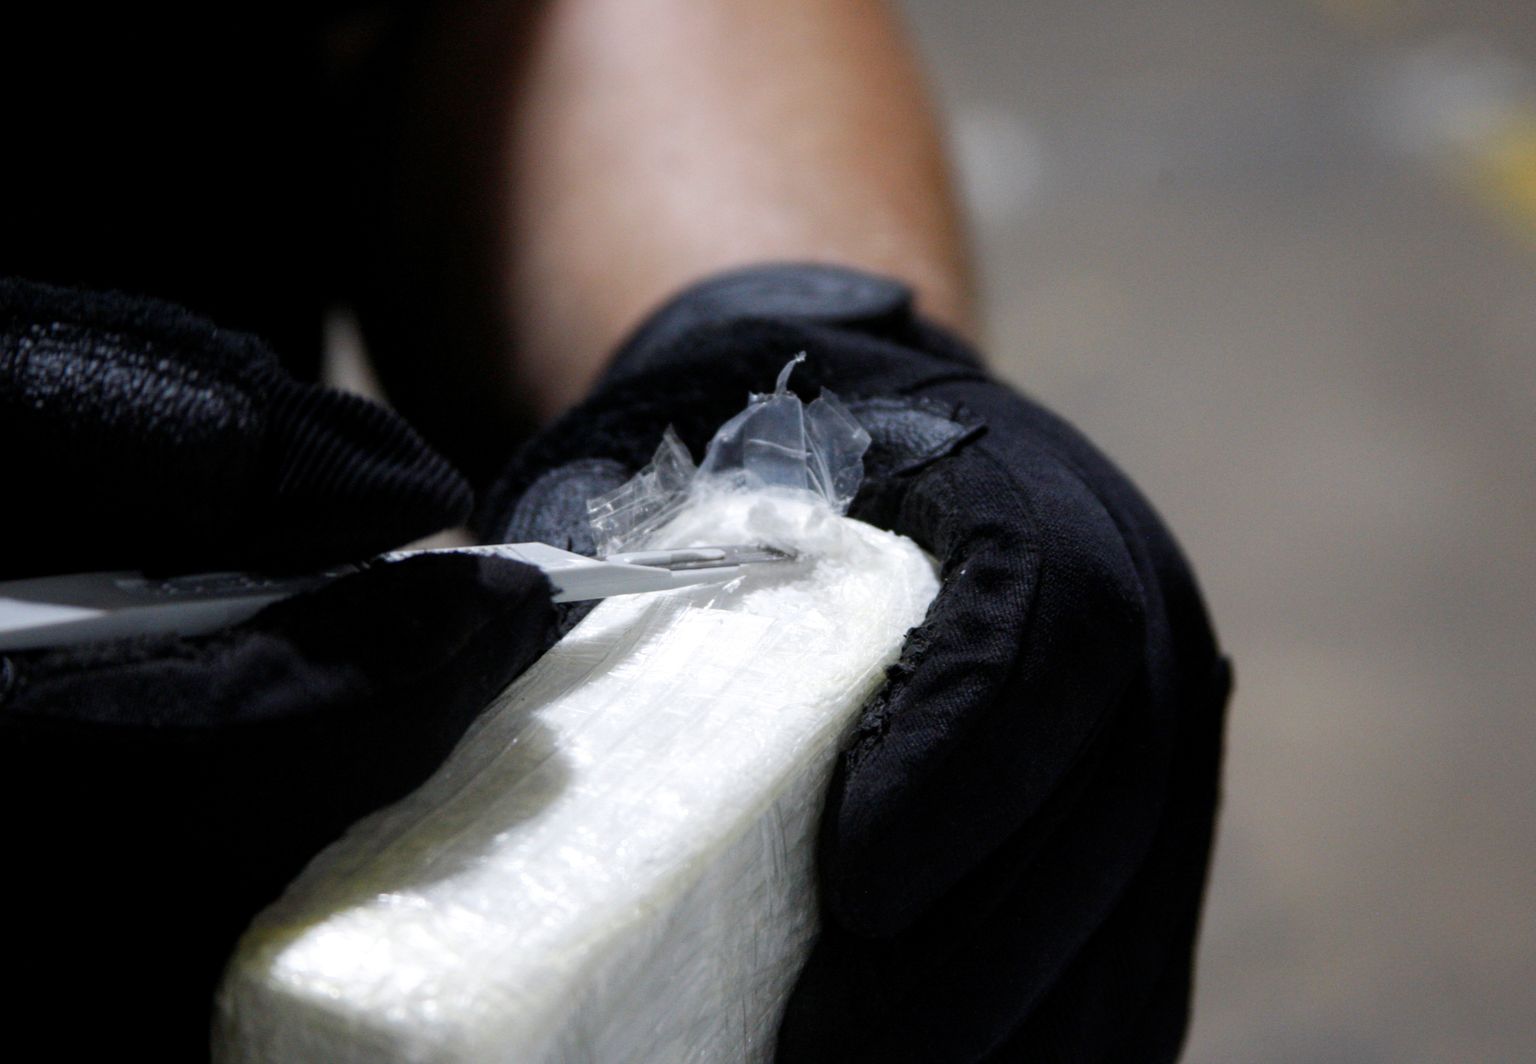 USA piirivalvur avamas kokaiinipakki. Foto on illustratiivne.